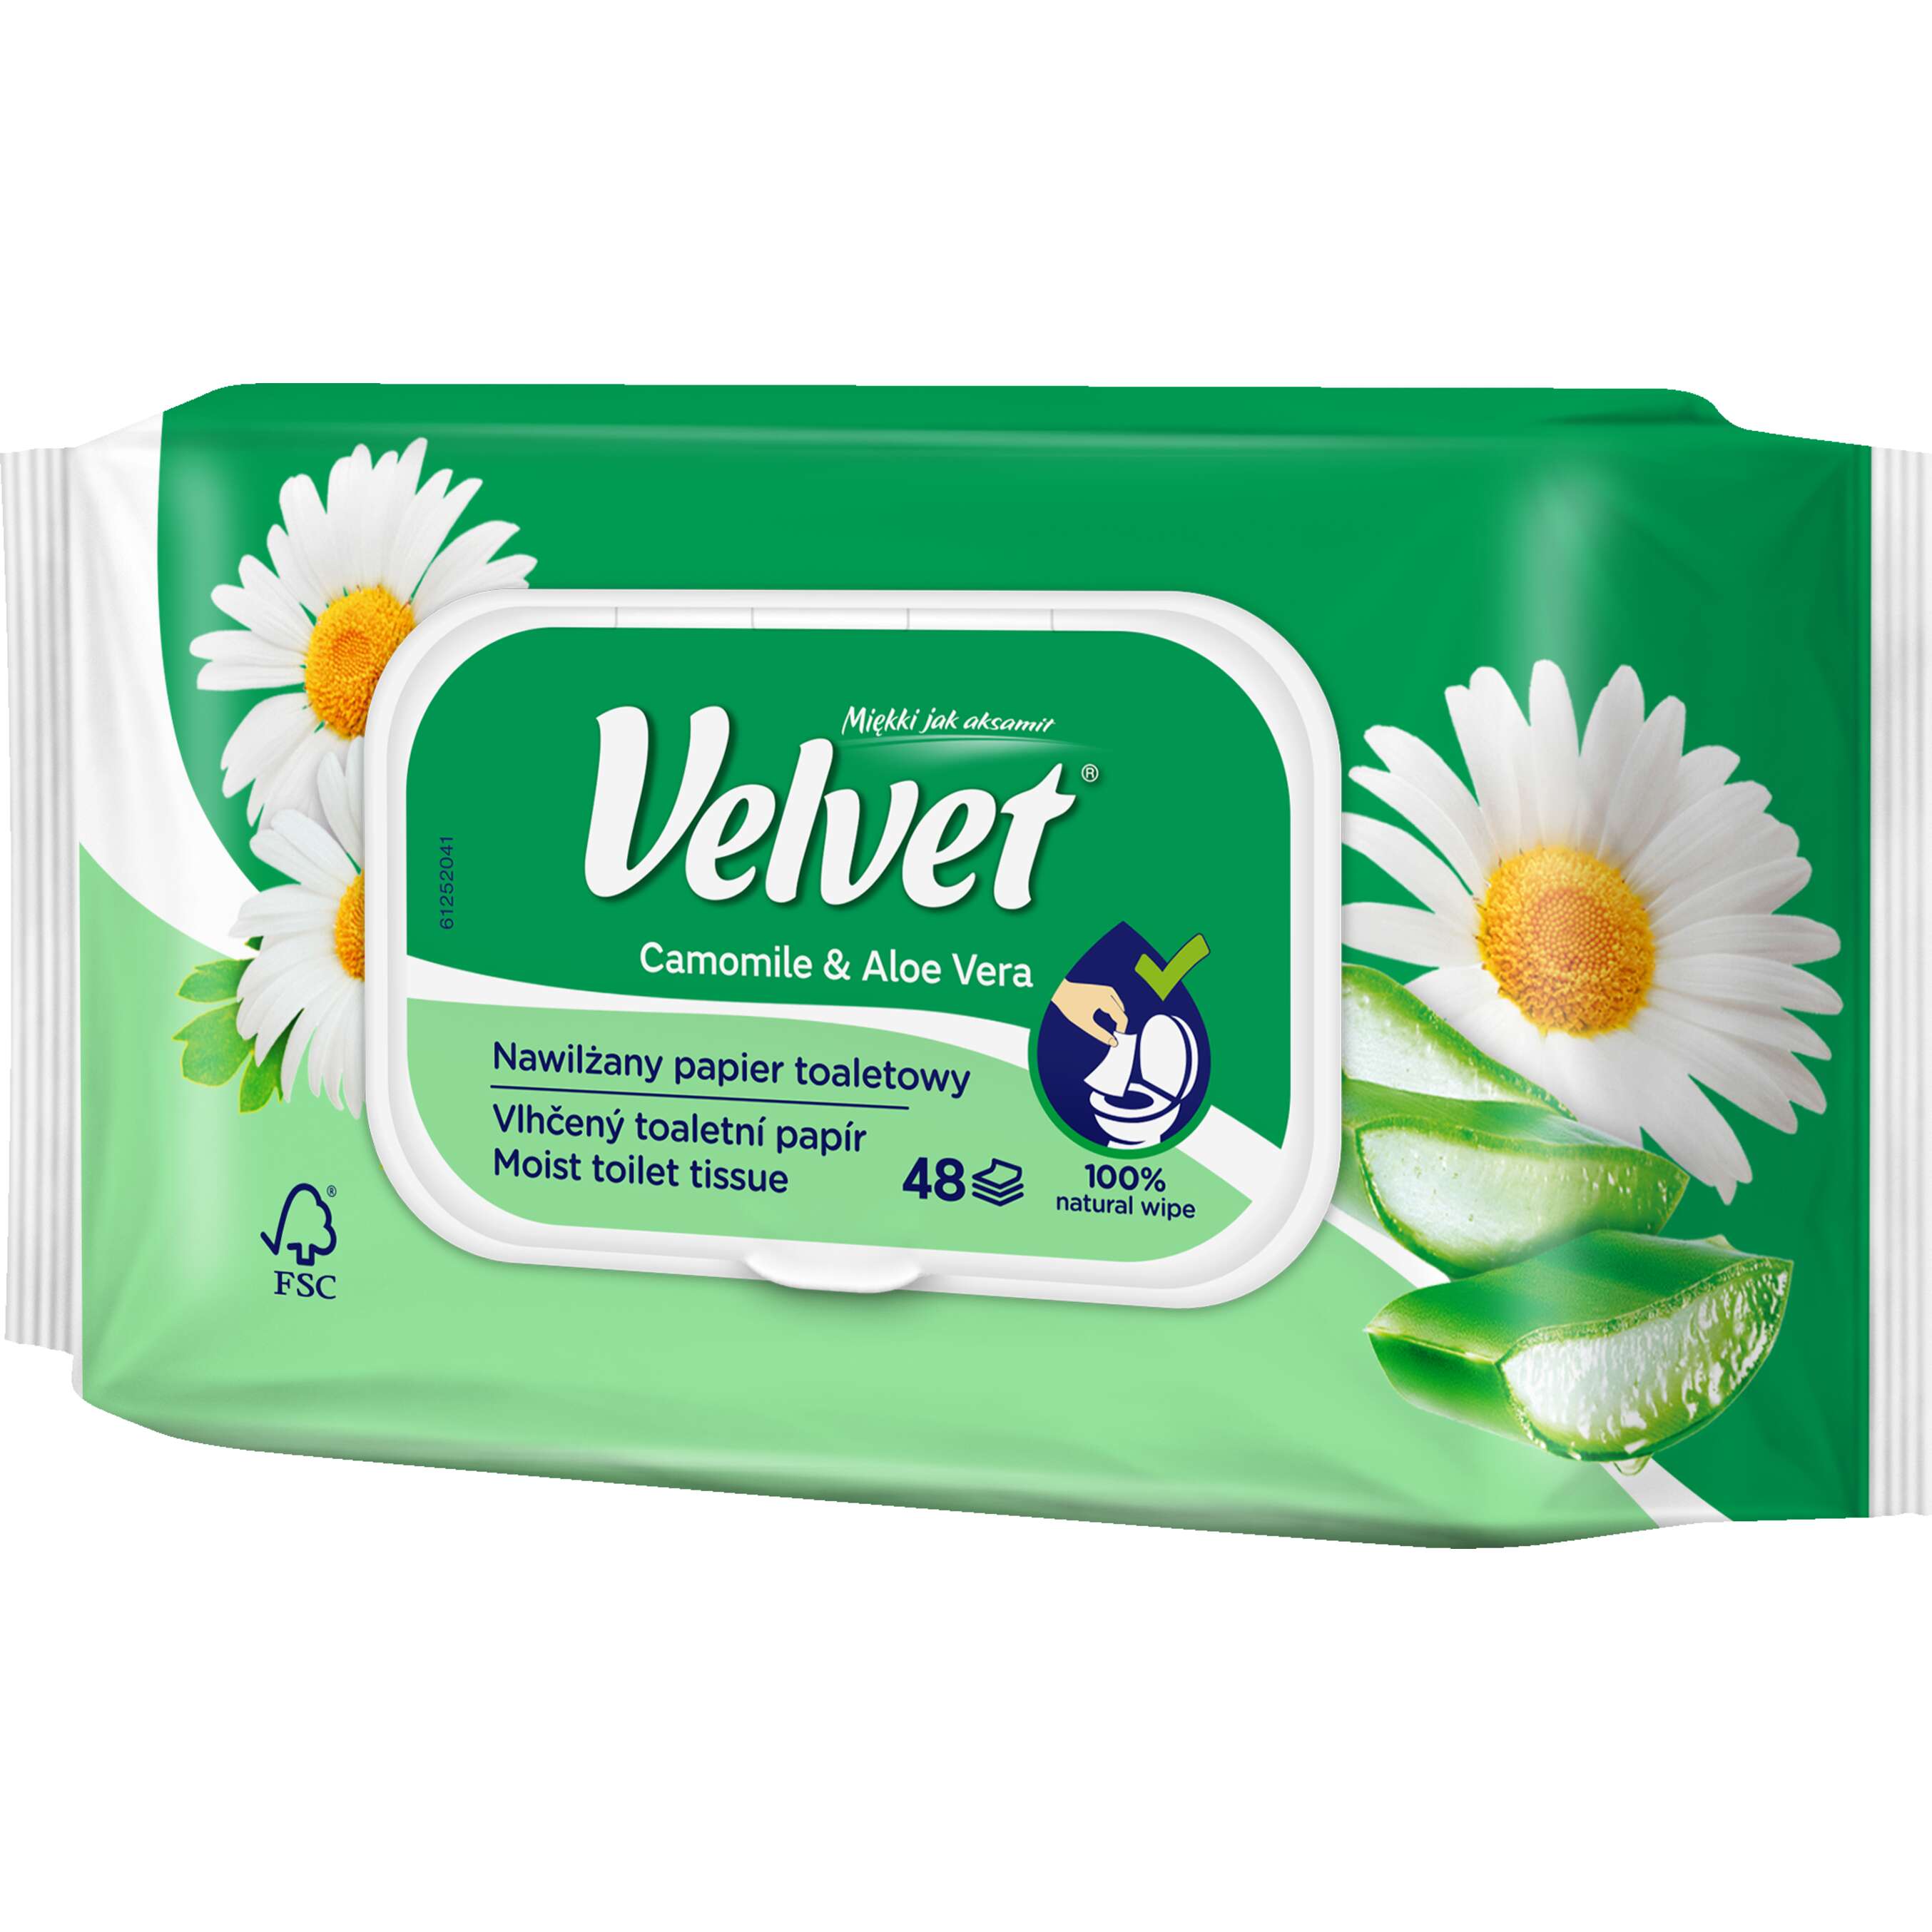 Zdjęcie oferty Velvet Papier toaletowy nawilżany